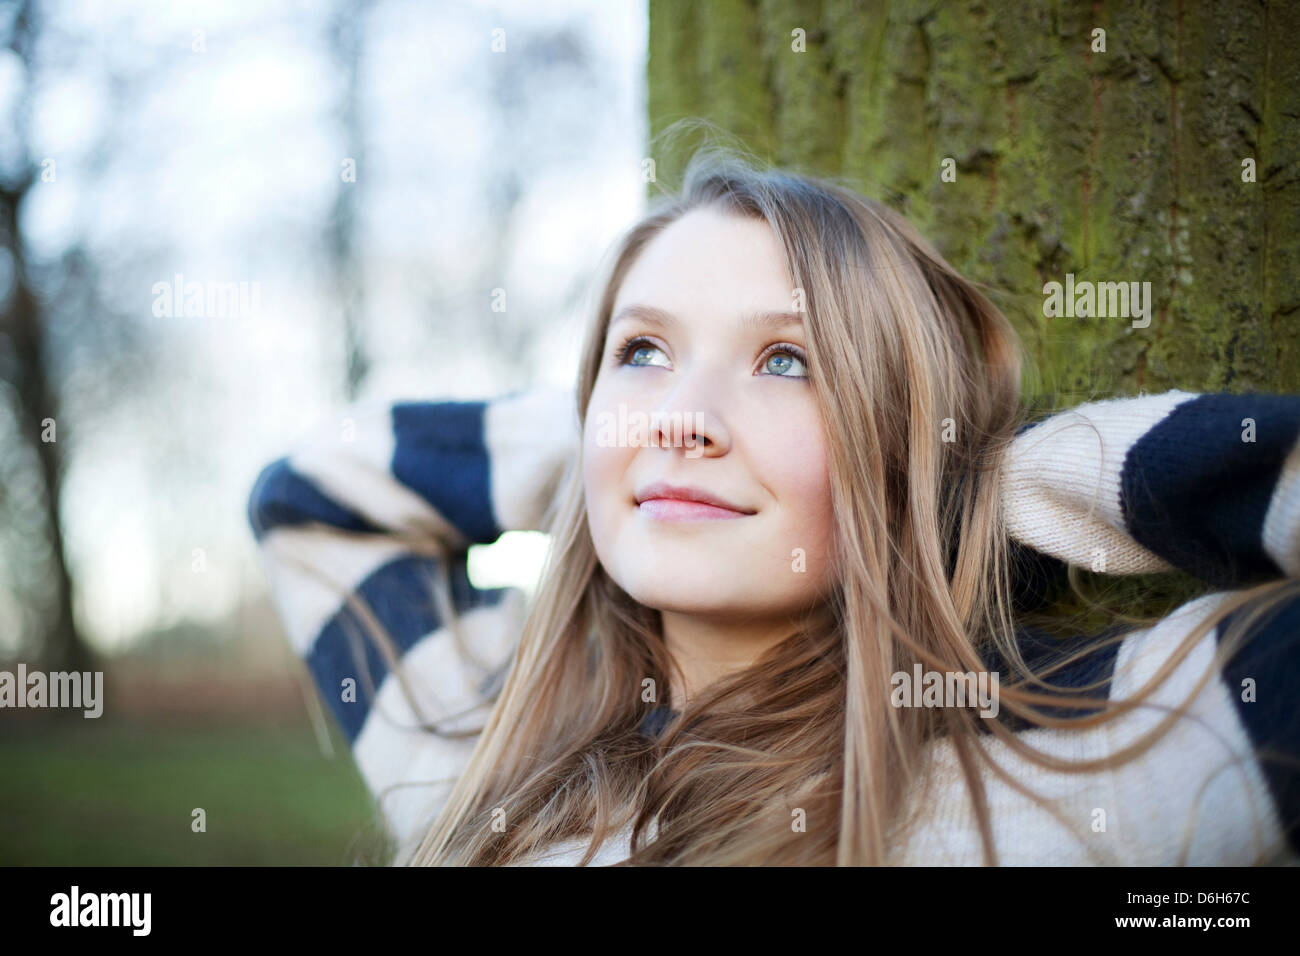 Donna seduta mediante una struttura ad albero all'aperto Foto Stock